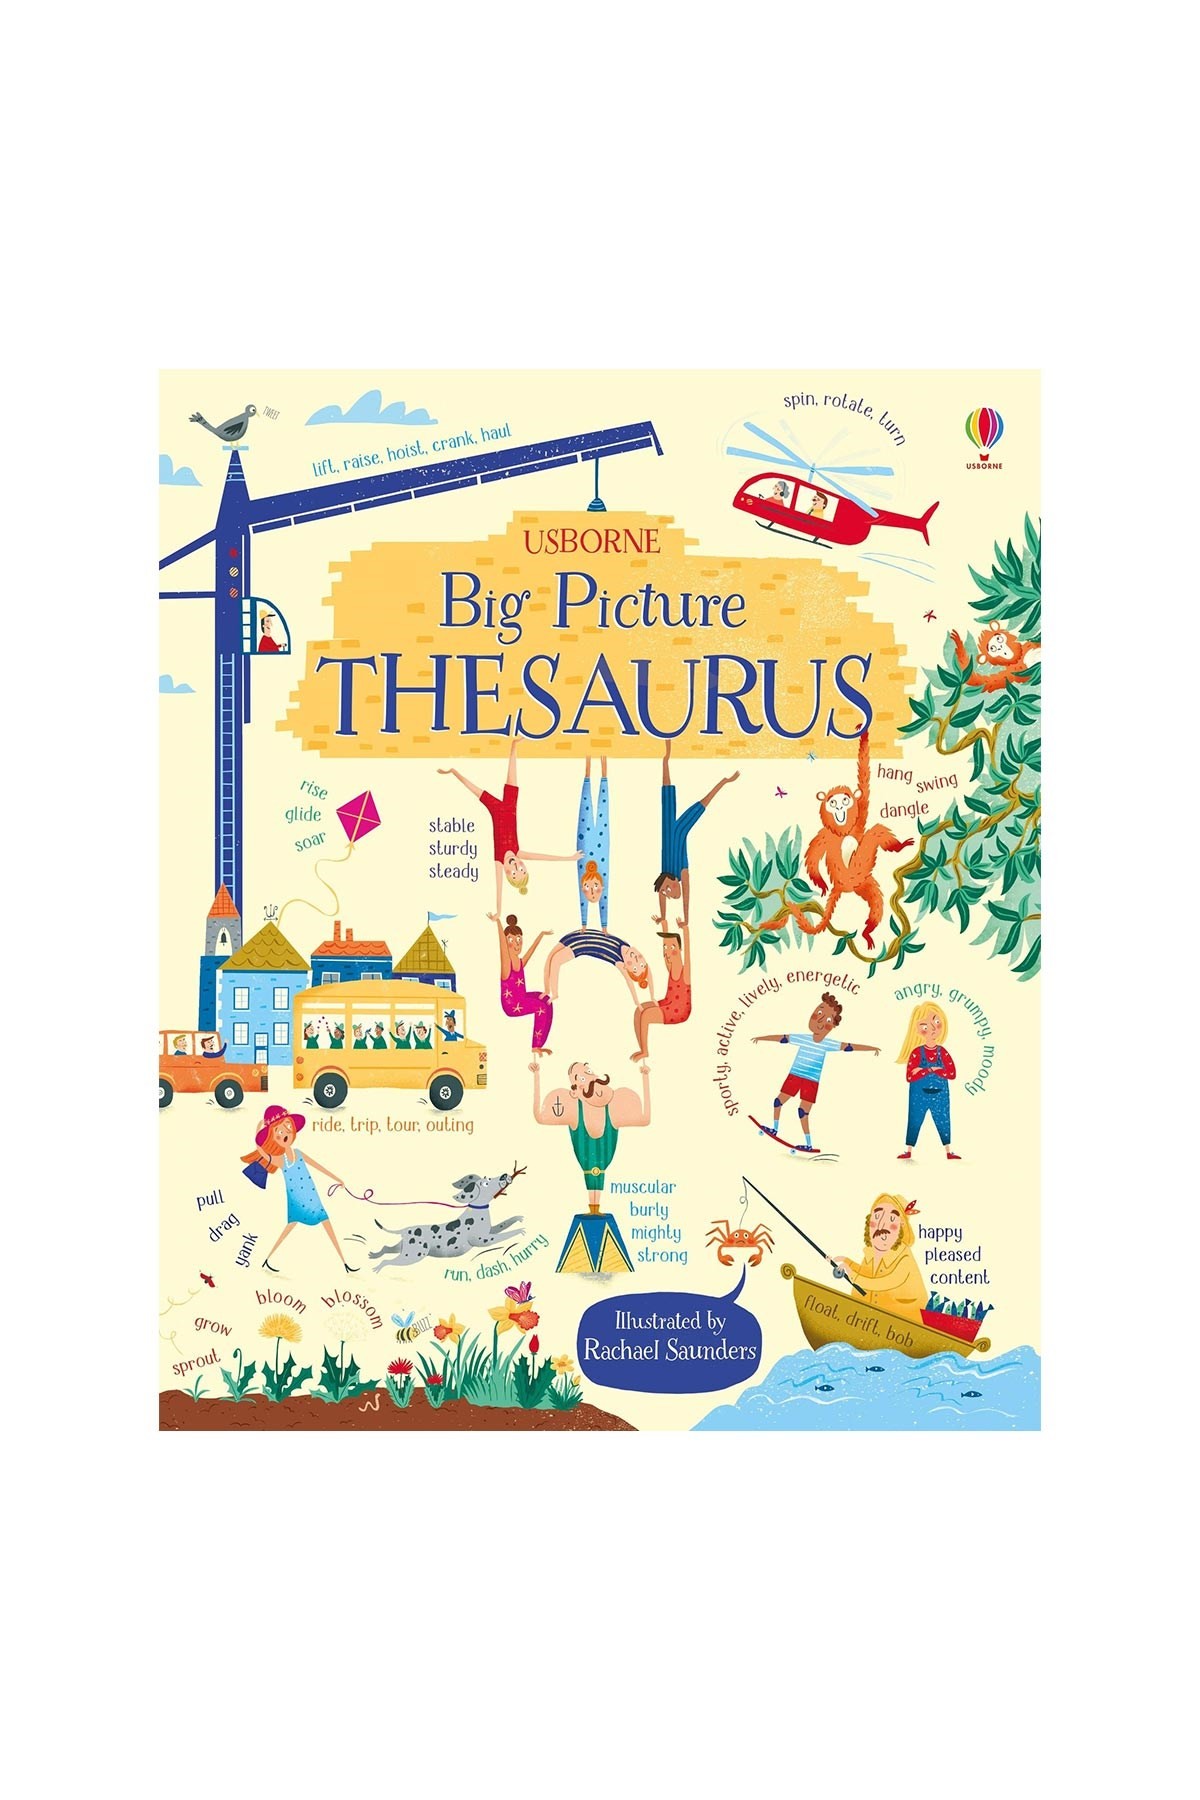 The Usborne Big Picture Thesaurus